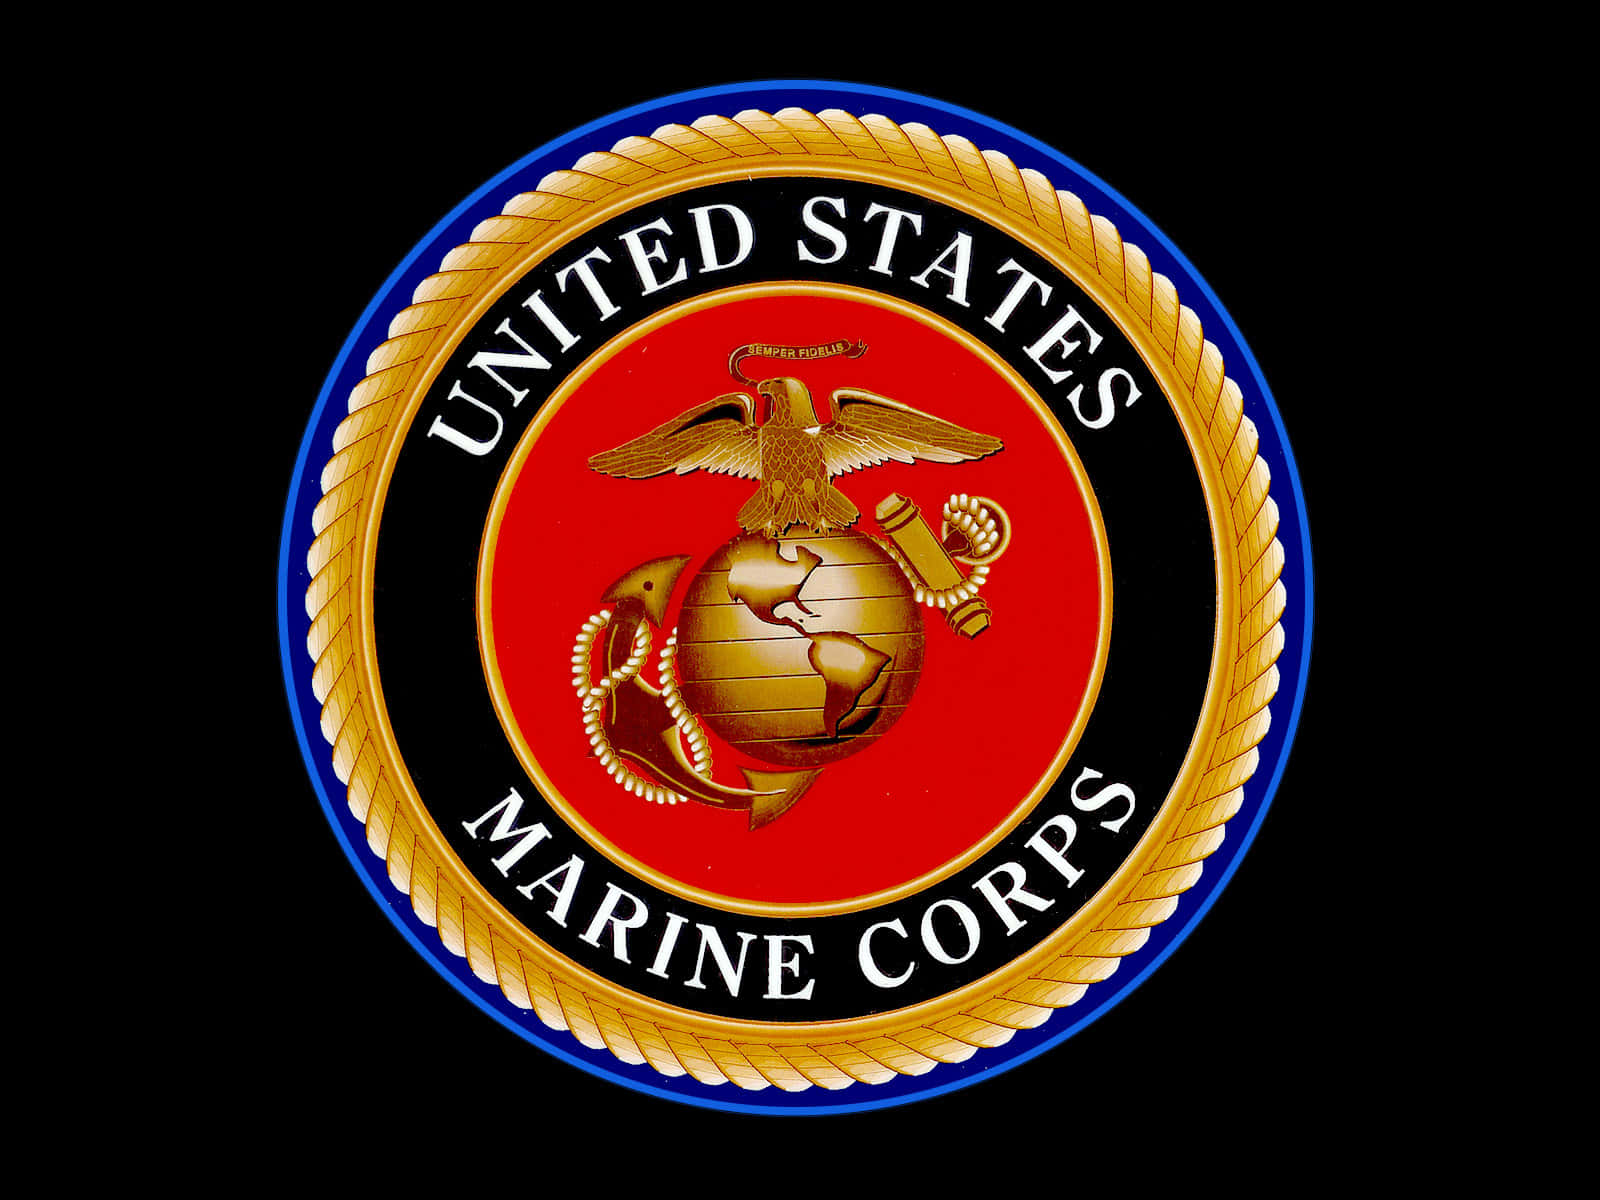 Ellogotipo Del Cuerpo De Marines De Los Estados Unidos En Un Fondo Negro. Fondo de pantalla